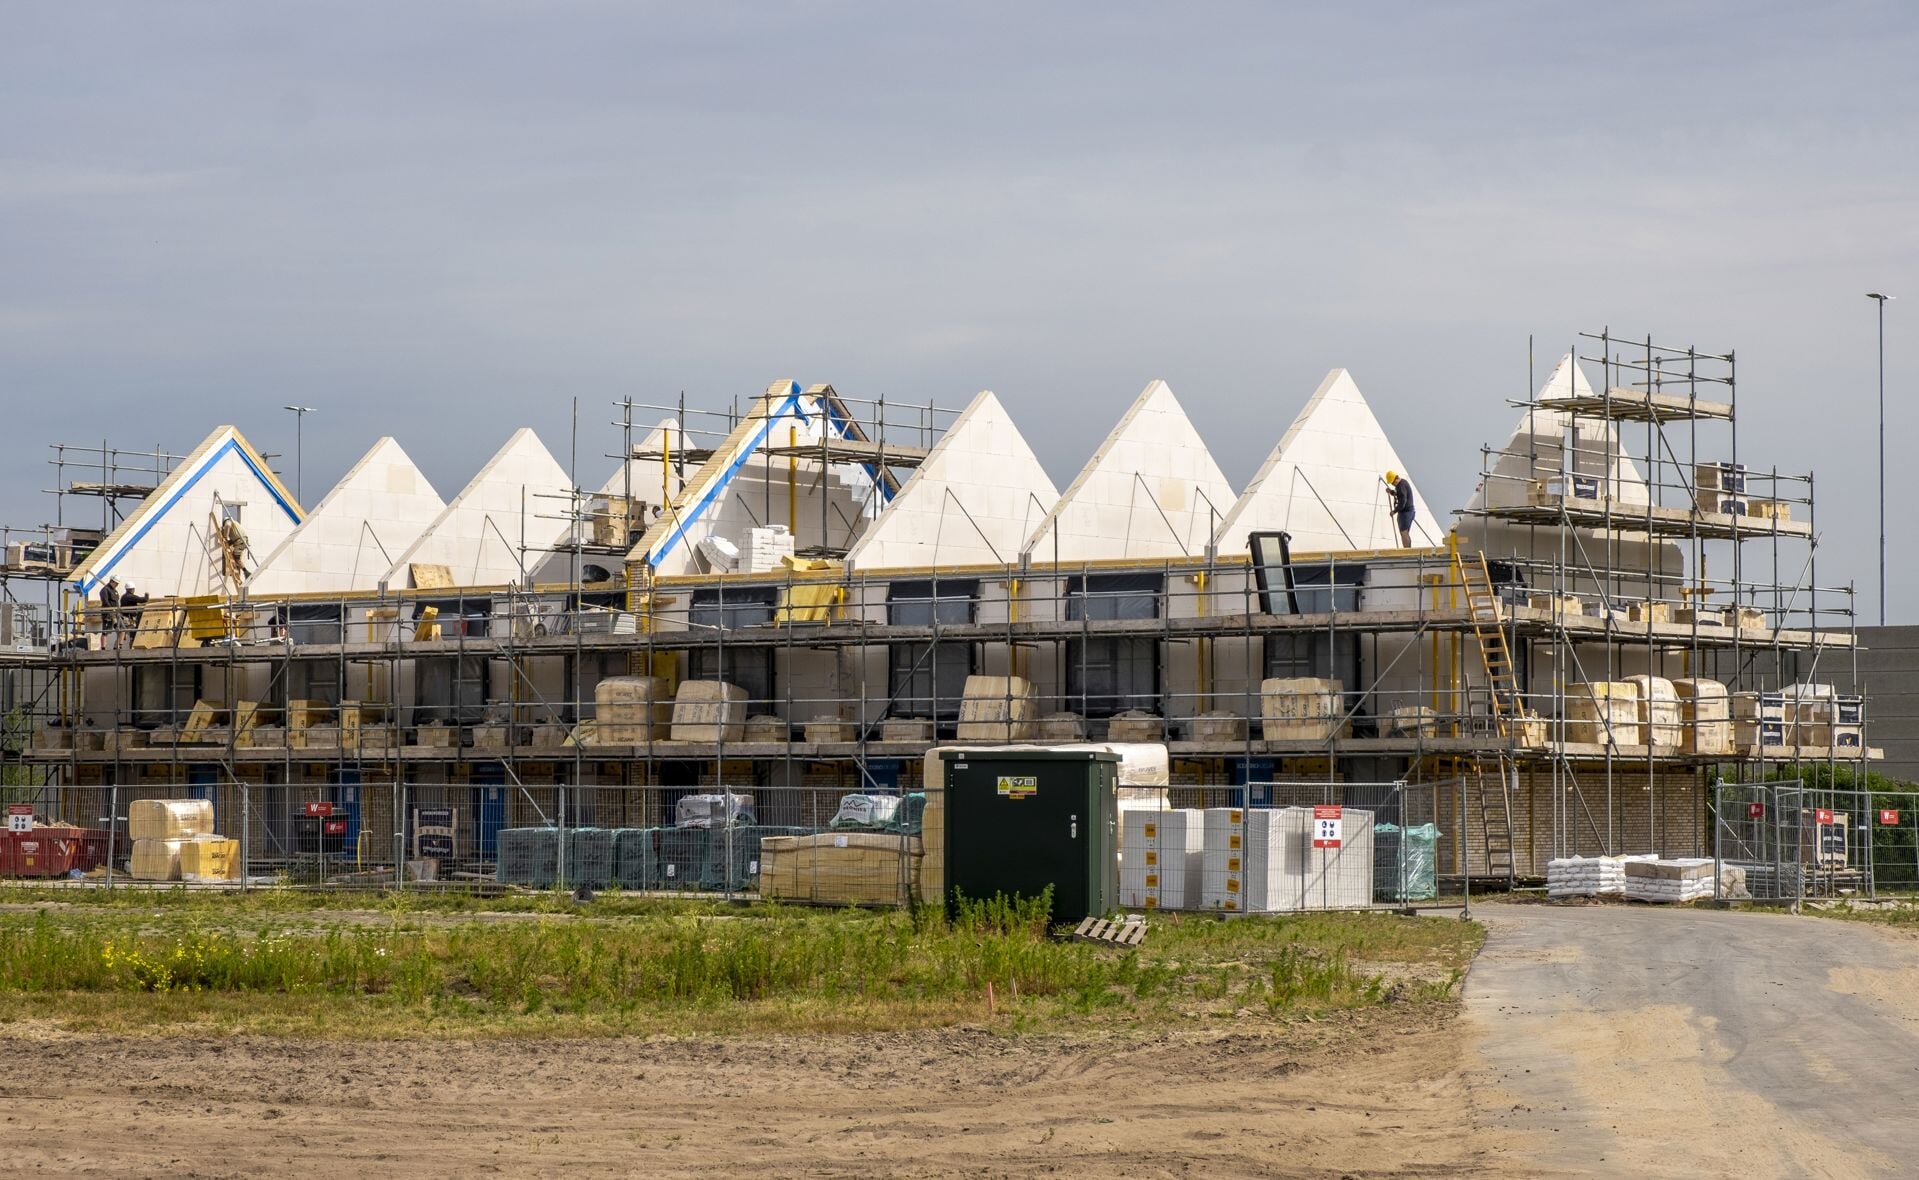 De huurhuizen in de nieuwe wijk Heem van Selis in aanbouw. De foto is van juni, inmiddels ligt het dak er al op.